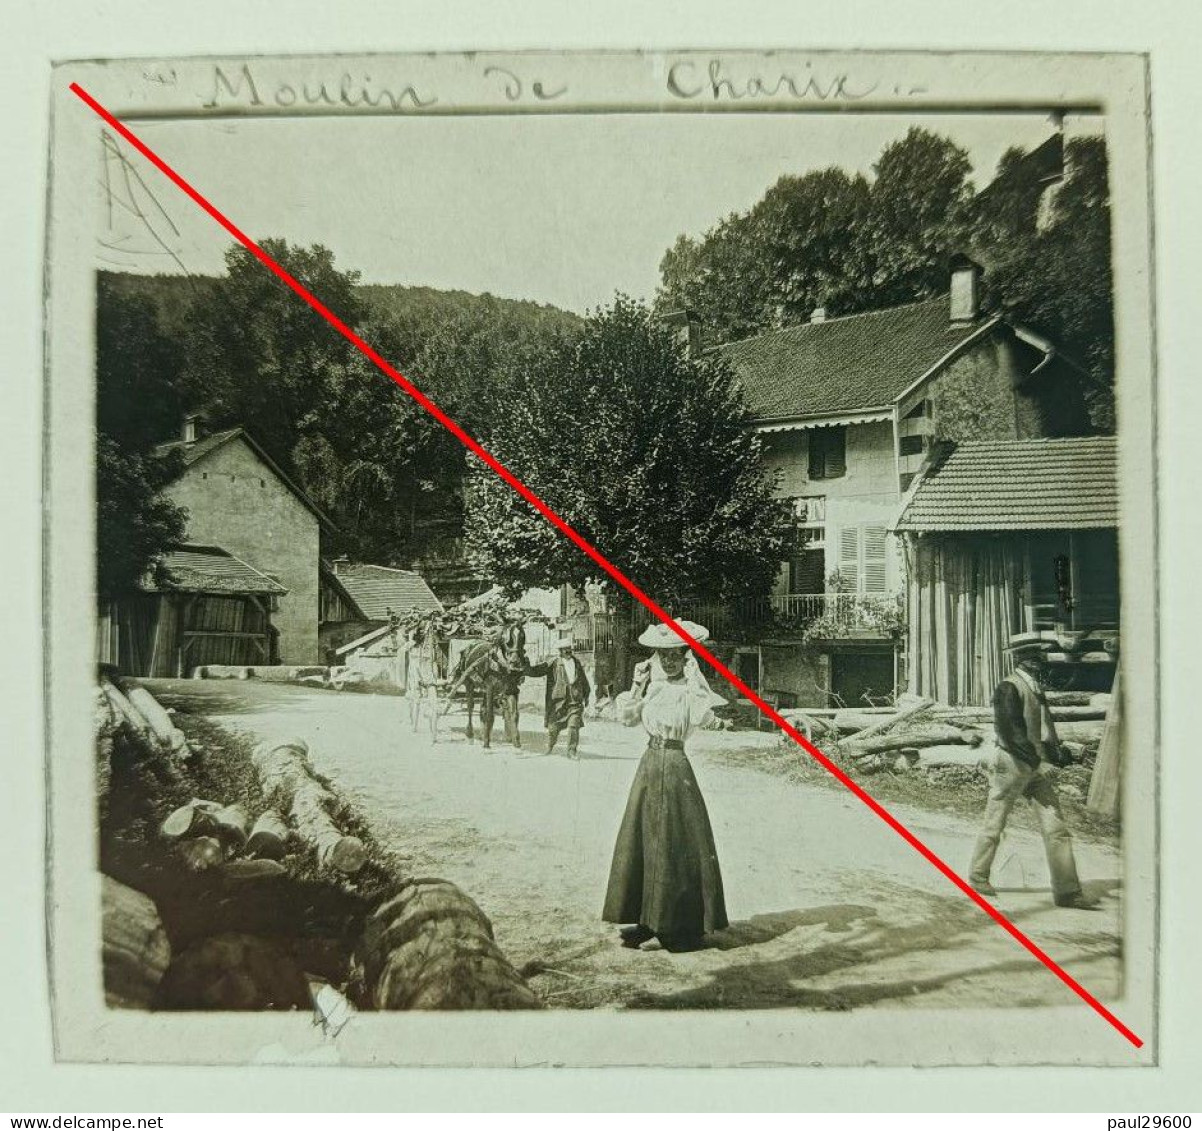 Photo Sur Plaque De Verre, L'ain, Moulin De Charix, Village, Maison, Rue, Attelage, Hangars, Bâtiments, Années 1930. - Plaques De Verre